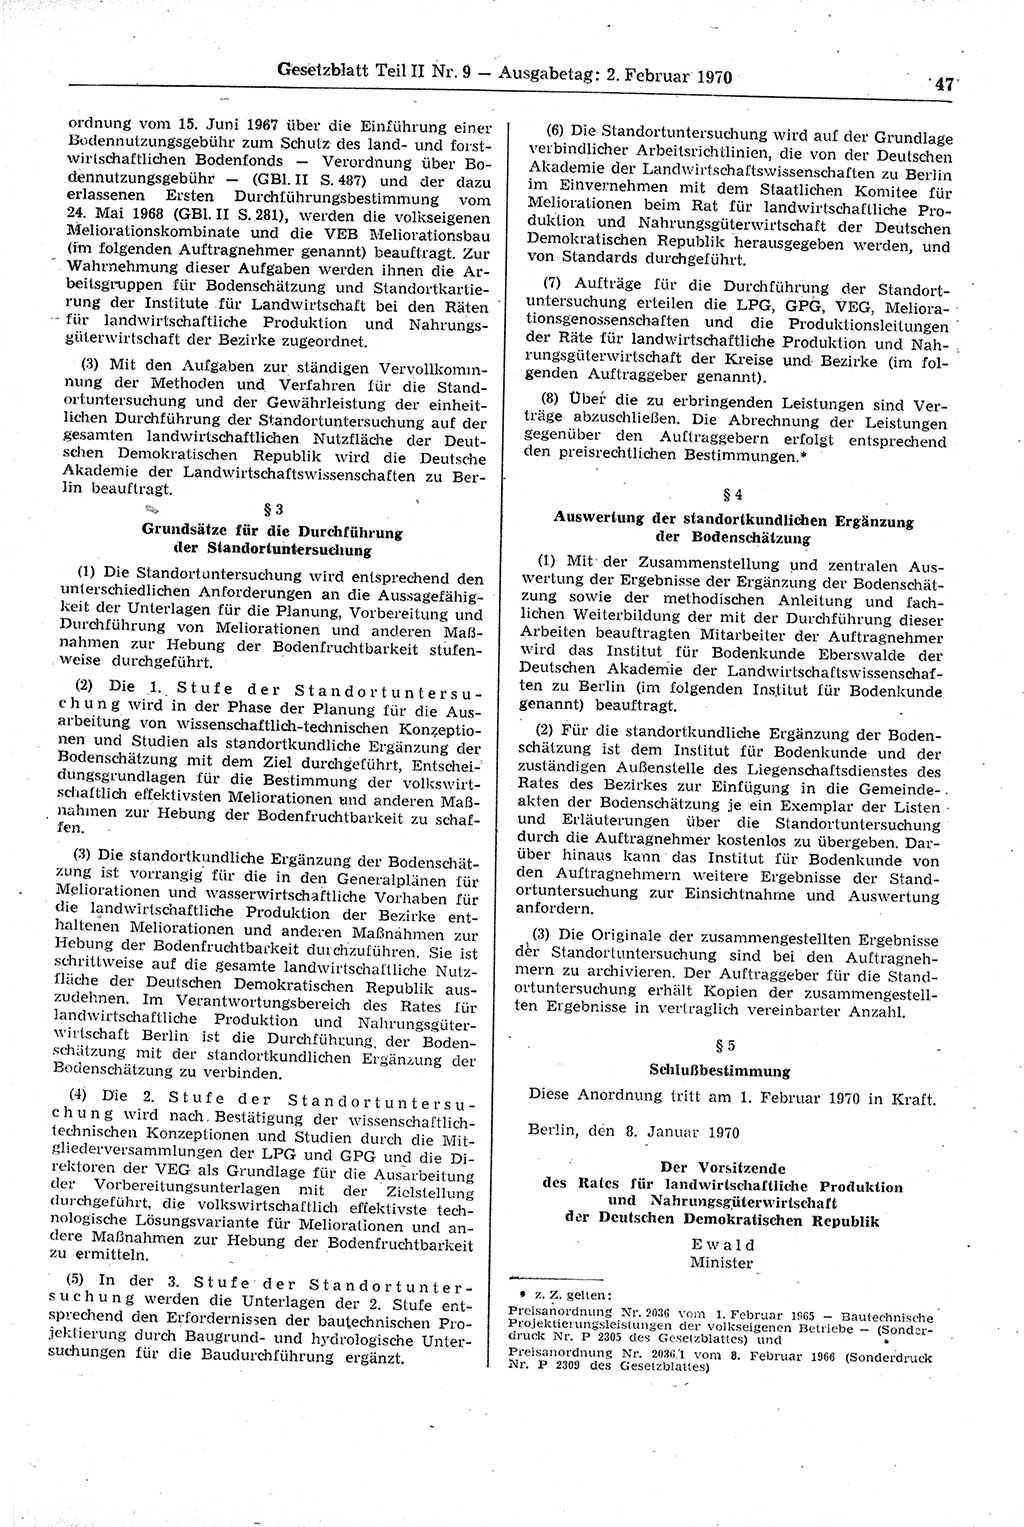 Gesetzblatt (GBl.) der Deutschen Demokratischen Republik (DDR) Teil ⅠⅠ 1970, Seite 47 (GBl. DDR ⅠⅠ 1970, S. 47)